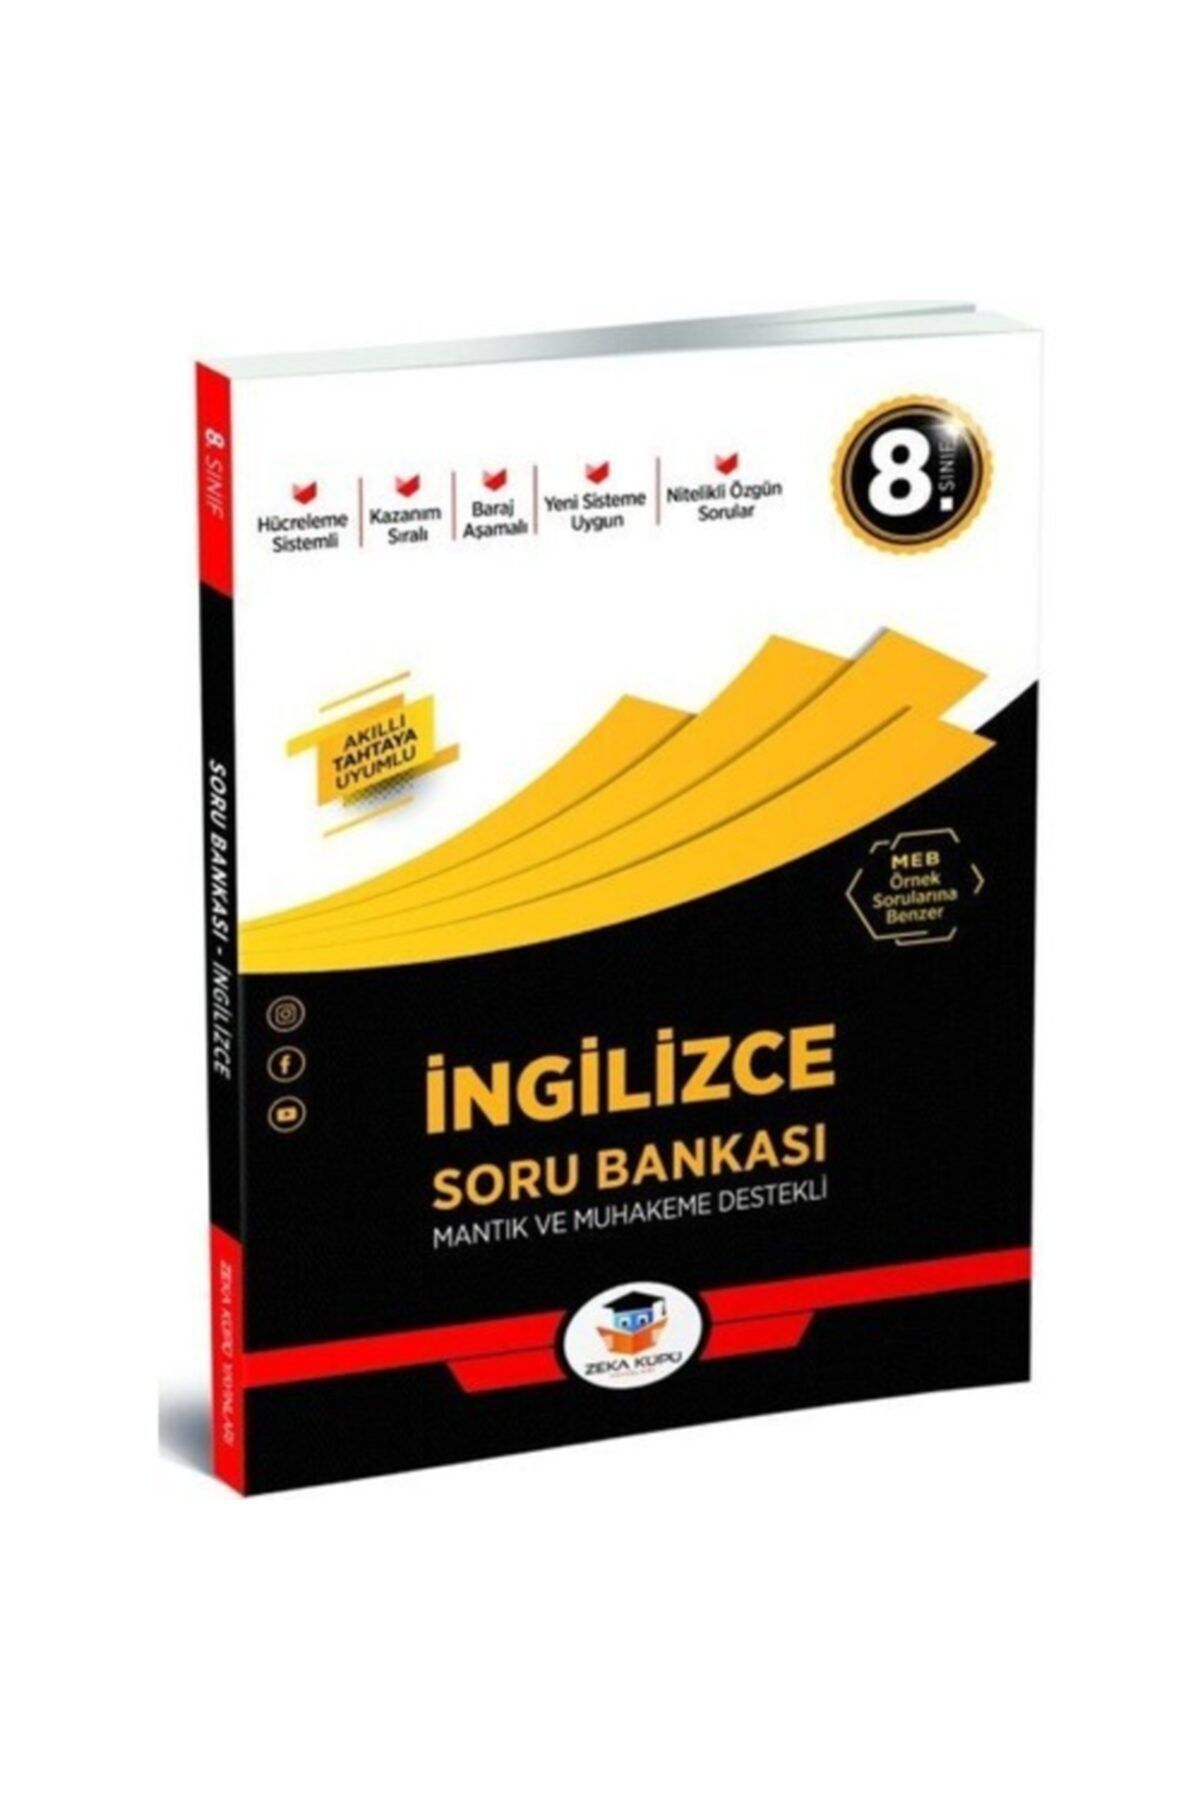 Zeka Küpü Yayınları 8. Sınıf Türkçe Soru Bankası